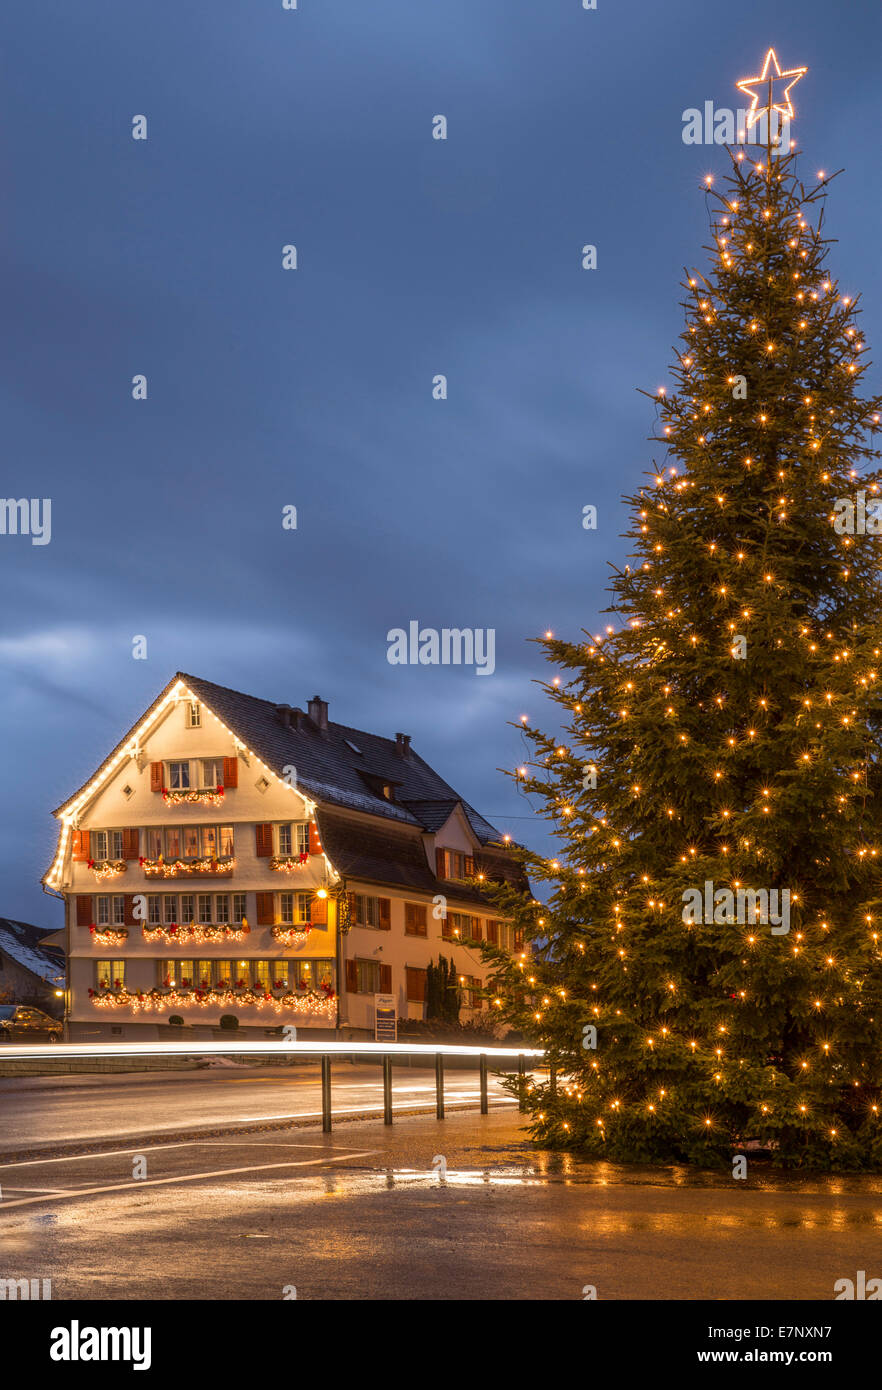 El pueblo, la ciudad, la iluminación de Navidad, Mörschwil, Navidad, Adviento, pueblo, ciudad, SG, en el cantón de San Gallen, Suiza, Europa Foto de stock